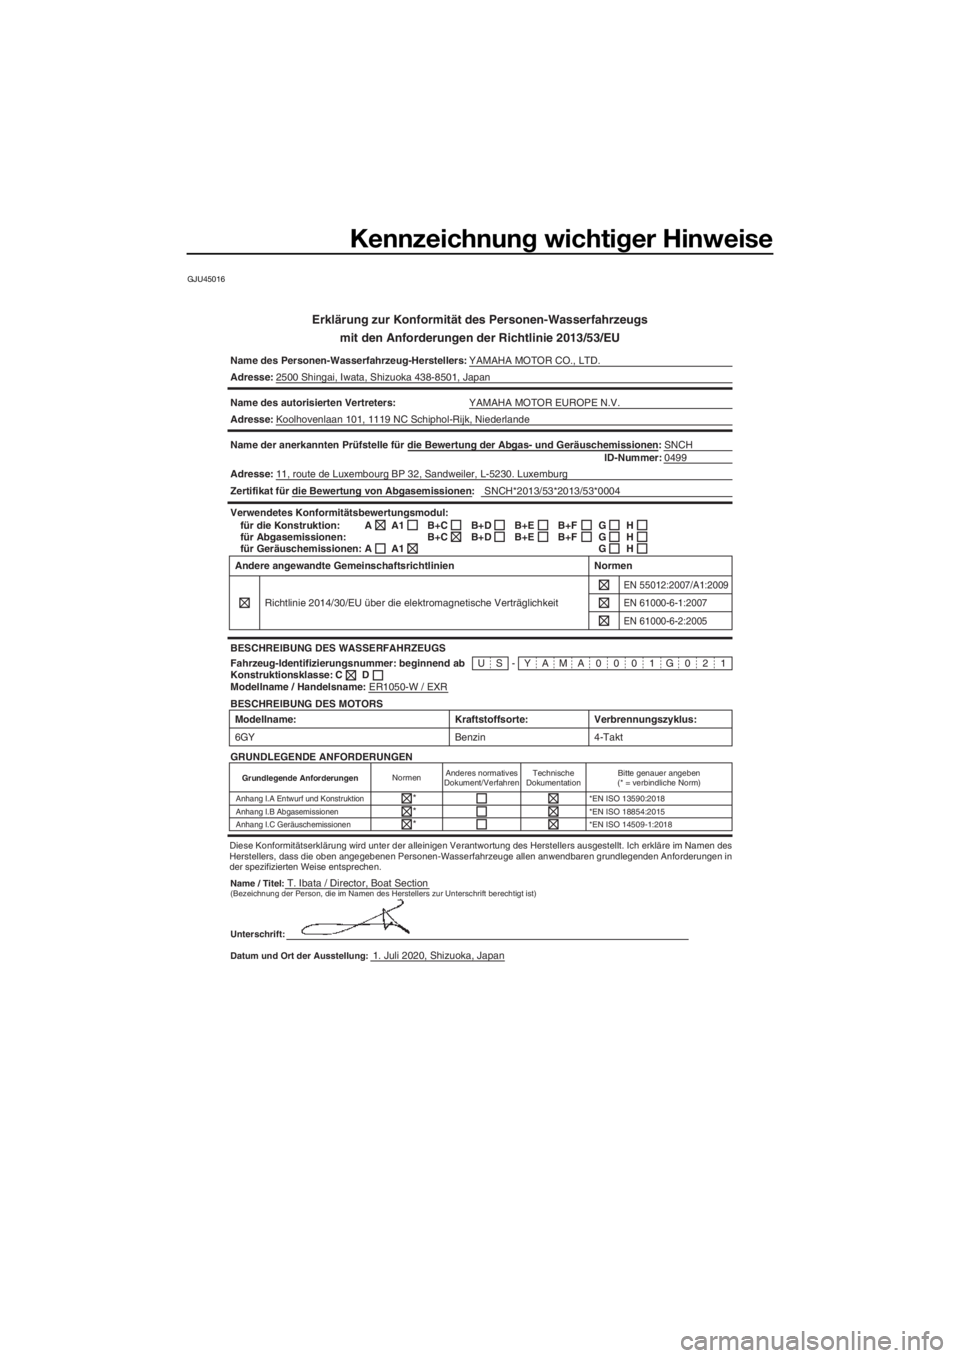 YAMAHA FJR1300 2021  Betriebsanleitungen (in German) Kennzeichnung wichtiger Hinweise
GJU45016
Erklärung zur Konformität des Personen-Wasserfahrzeugs
mit den Anforderun gen der Richtlinie 2013/53/EU
Name des Personen-Wasserfahrzeug-Herstellers: YAMAHA